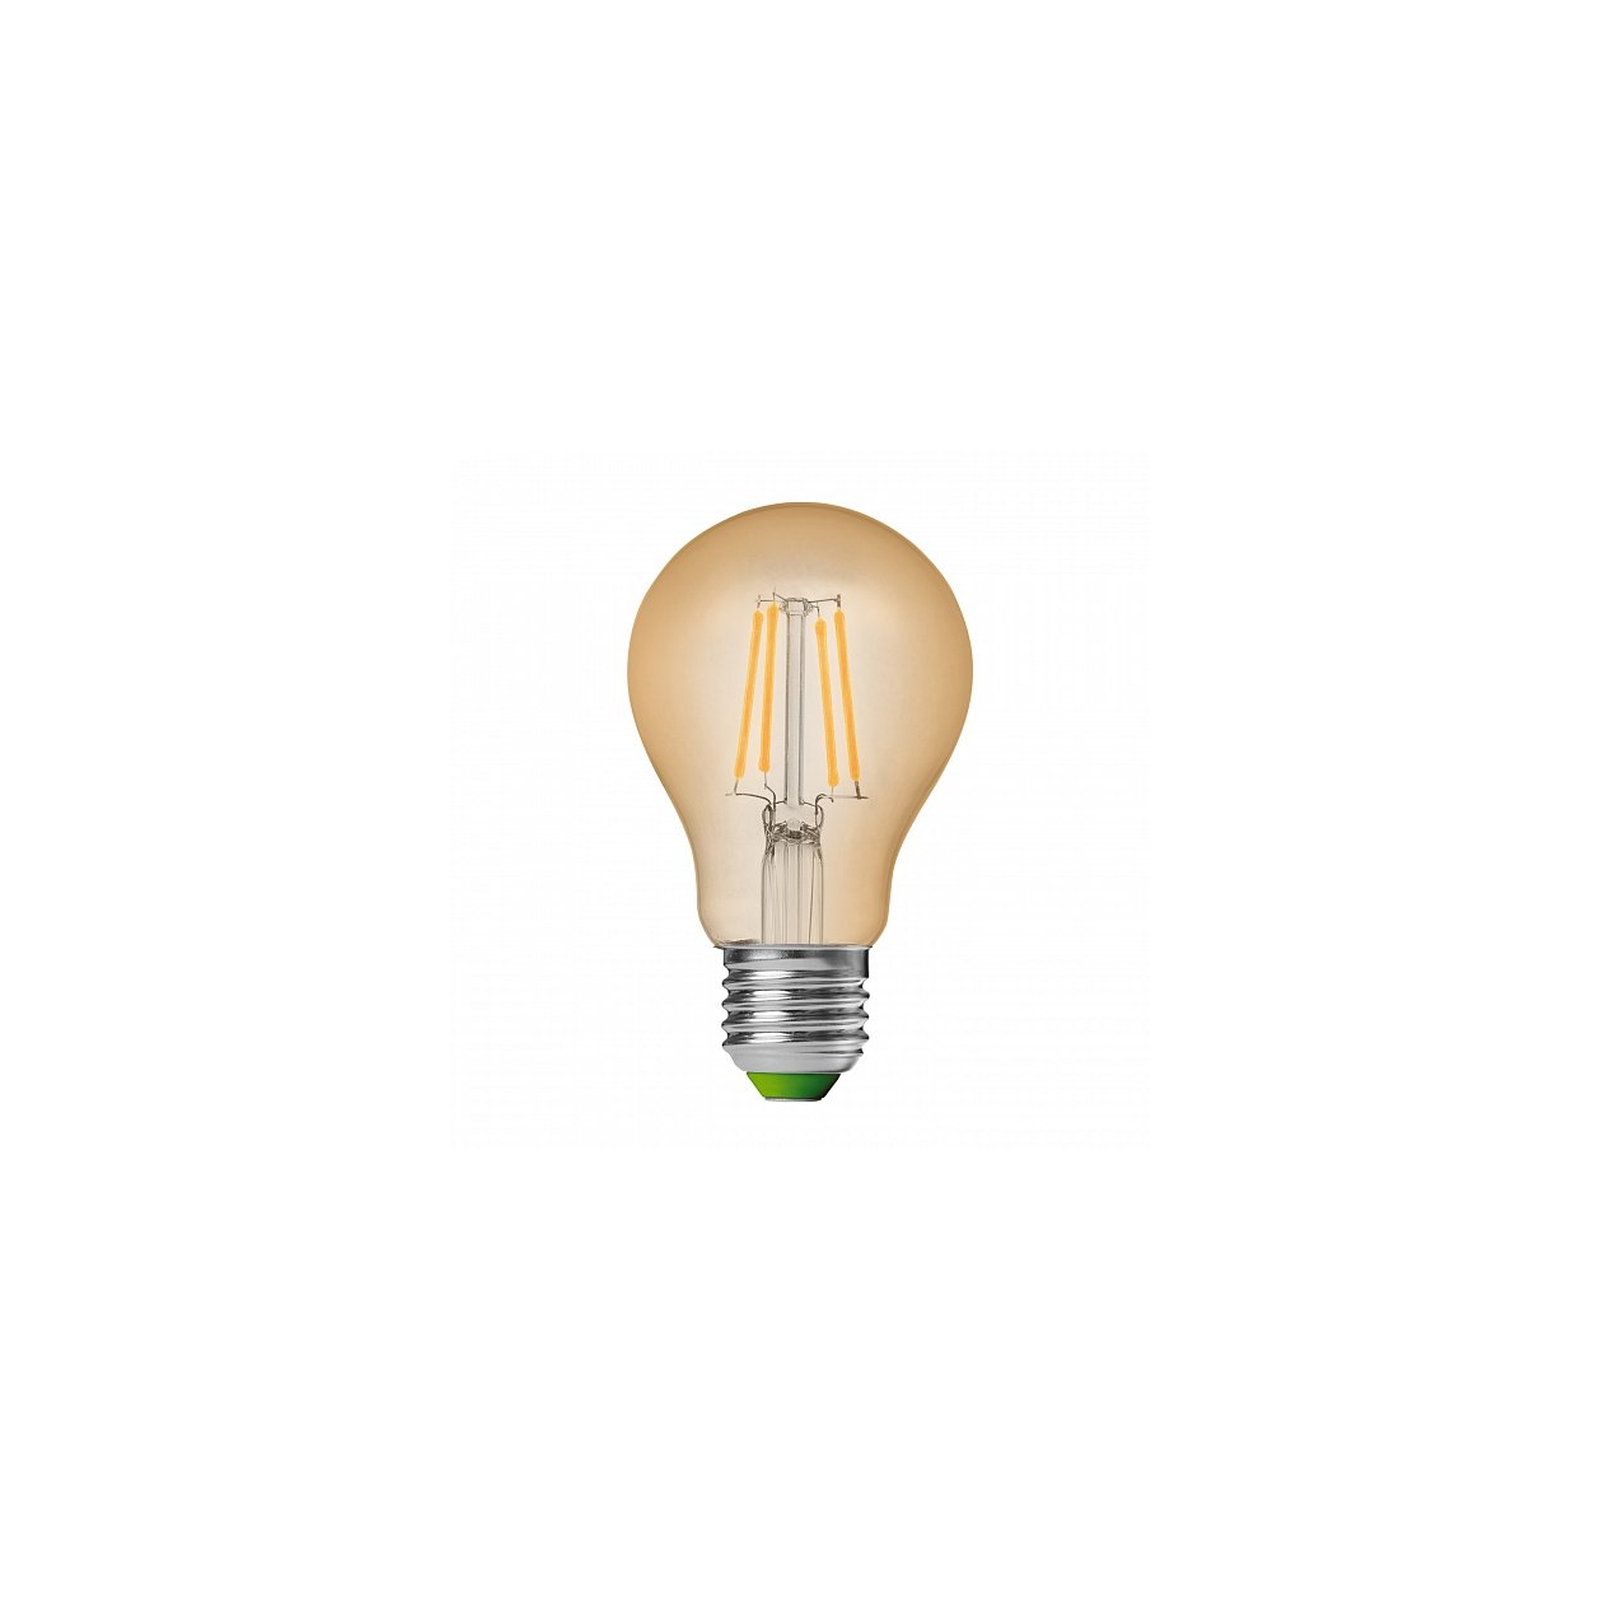 Лампочка Eurolamp A60 8W E27 2700K (deco) акция 1+1 new (MLP-LED-A60-08273(Amber)new) изображение 2